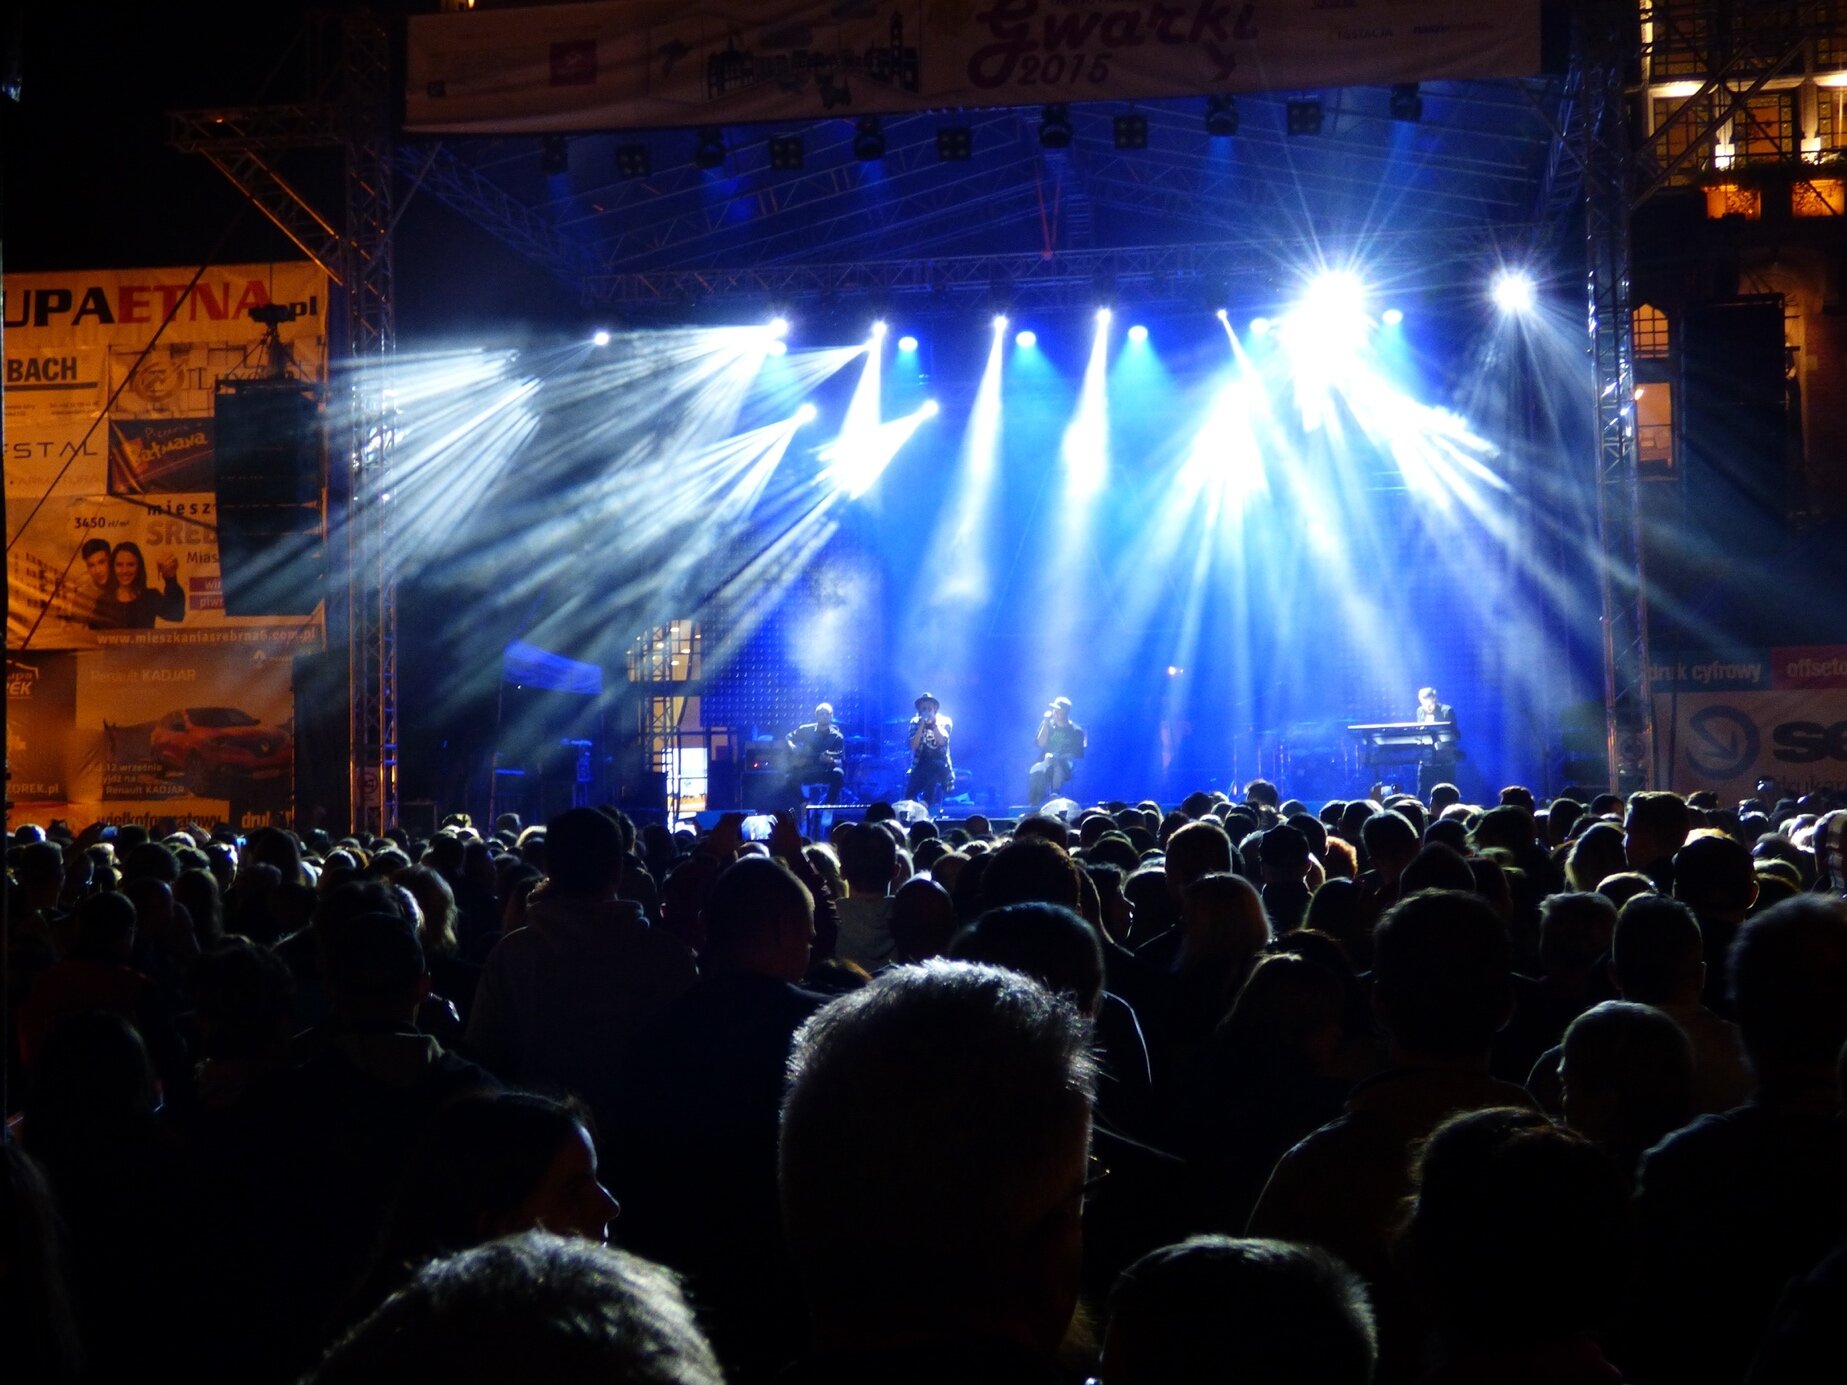 Zdjęcie przedstawia koncert muzyczny. Na pierwszym planie widać tłum ludzi stojących przed sceną, na drugim planie scenę rozświetloną reflektorami i niebieskim światłem. Na scenie znajduje się czterech muzyków. Za sceną widać fragmenty budynków.